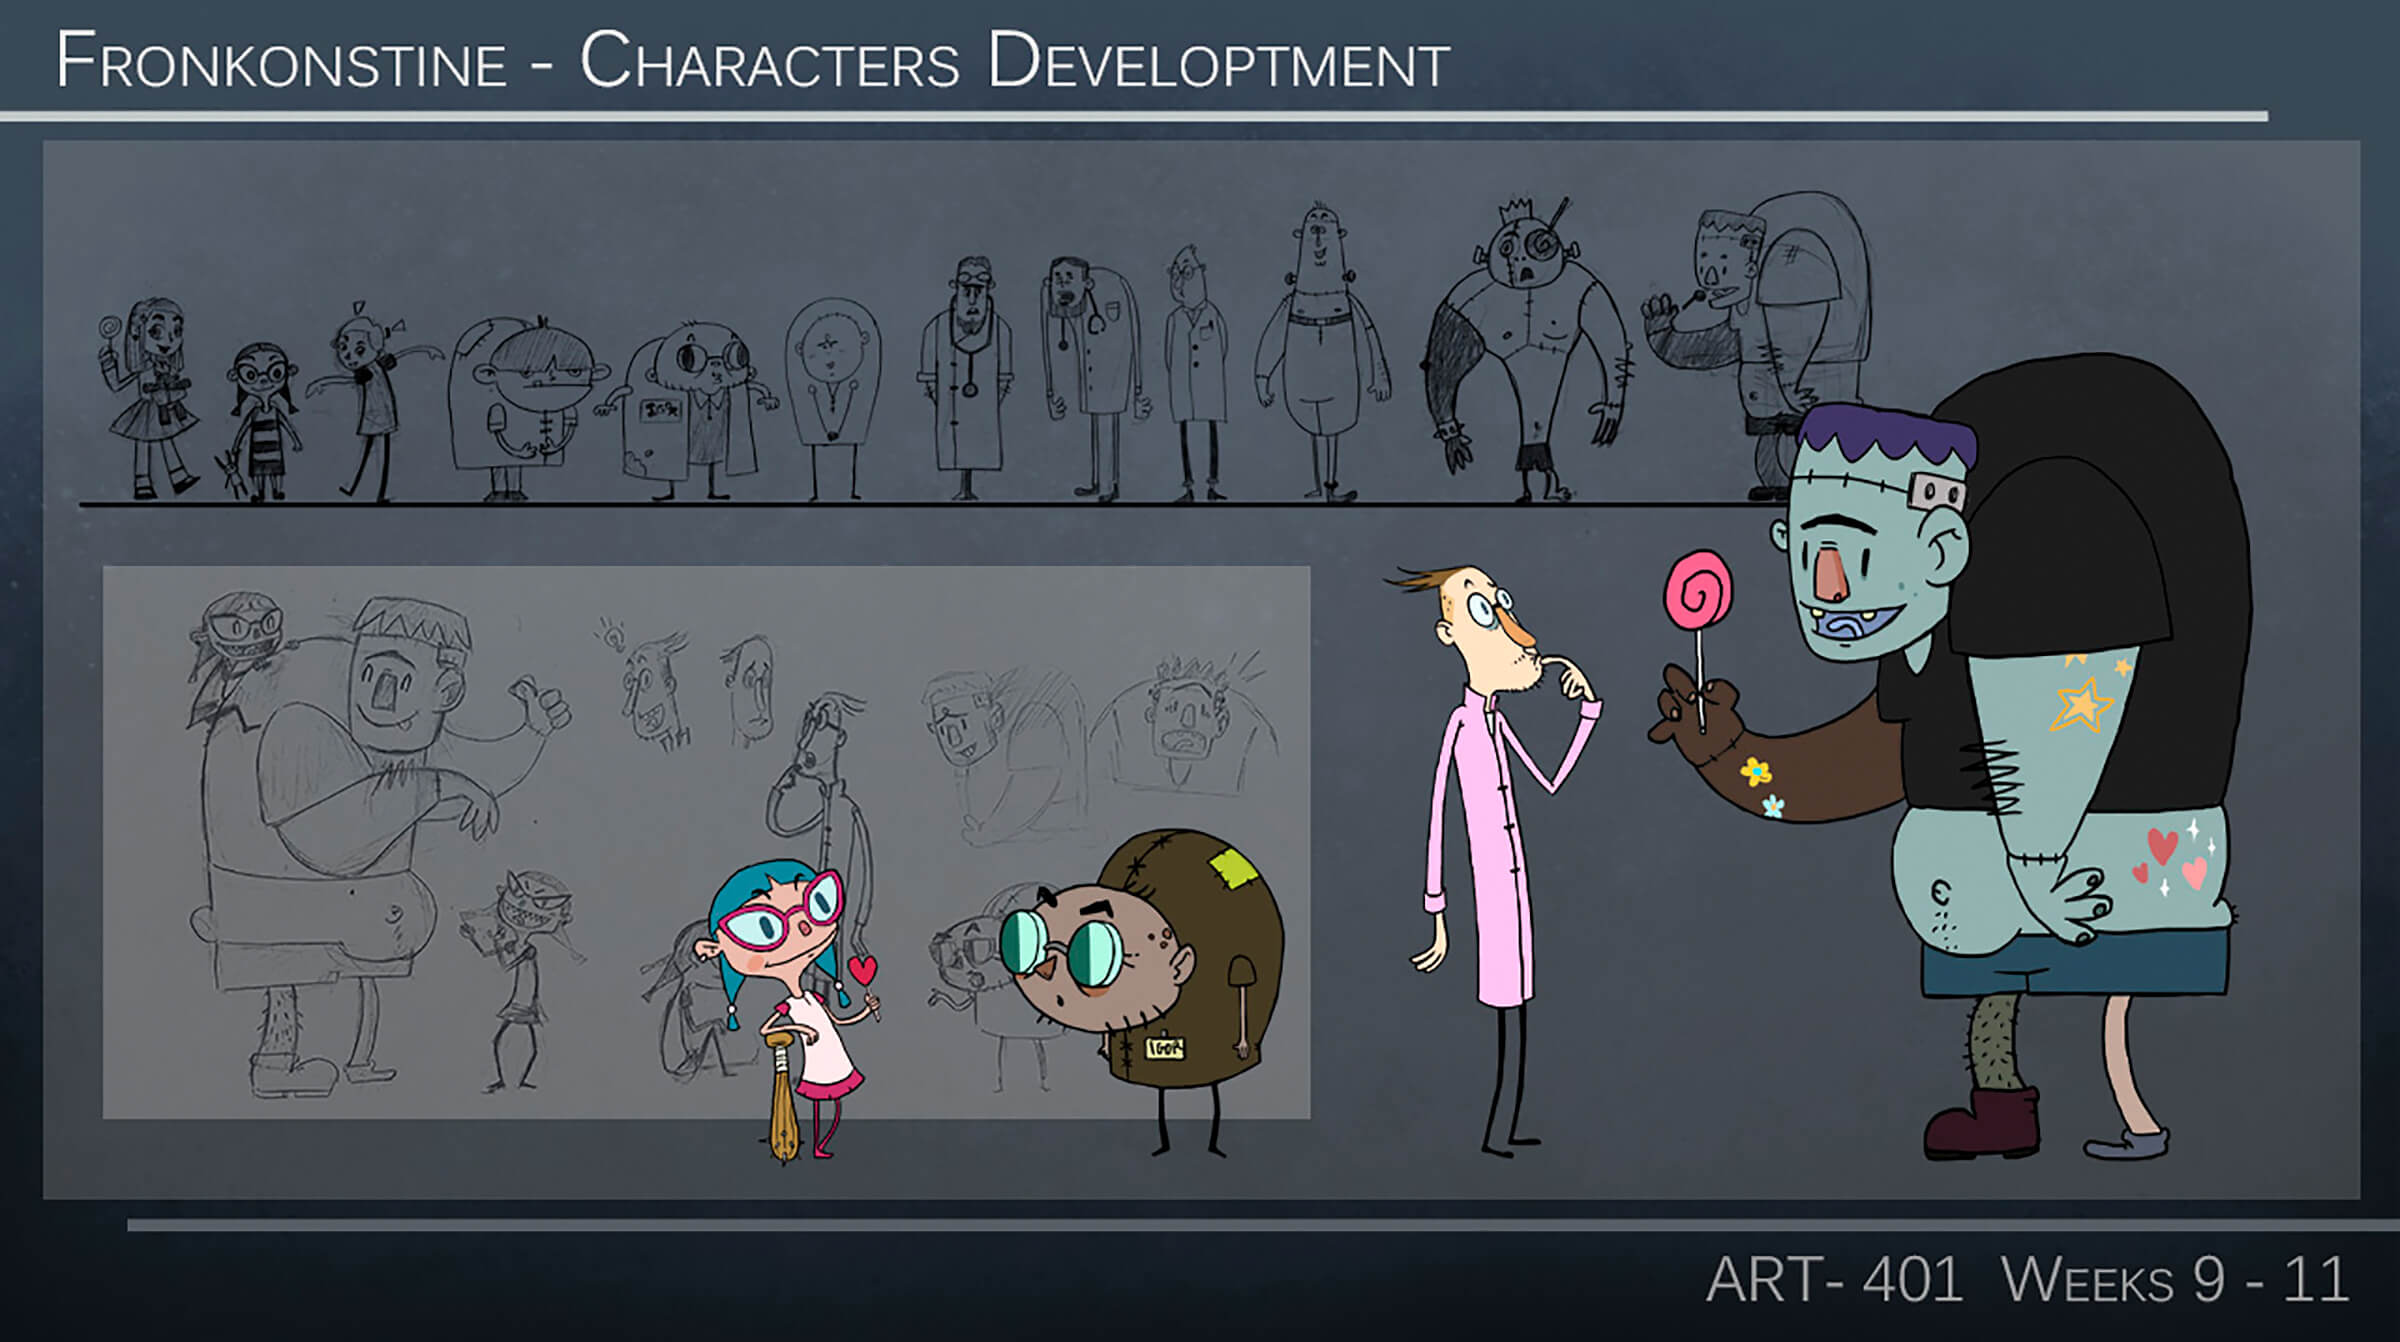 Bocetos conceptuales de una niña, un científico y su asistente enano, y un simpático Monstruo de Frankenstein sosteniendo una piruleta.